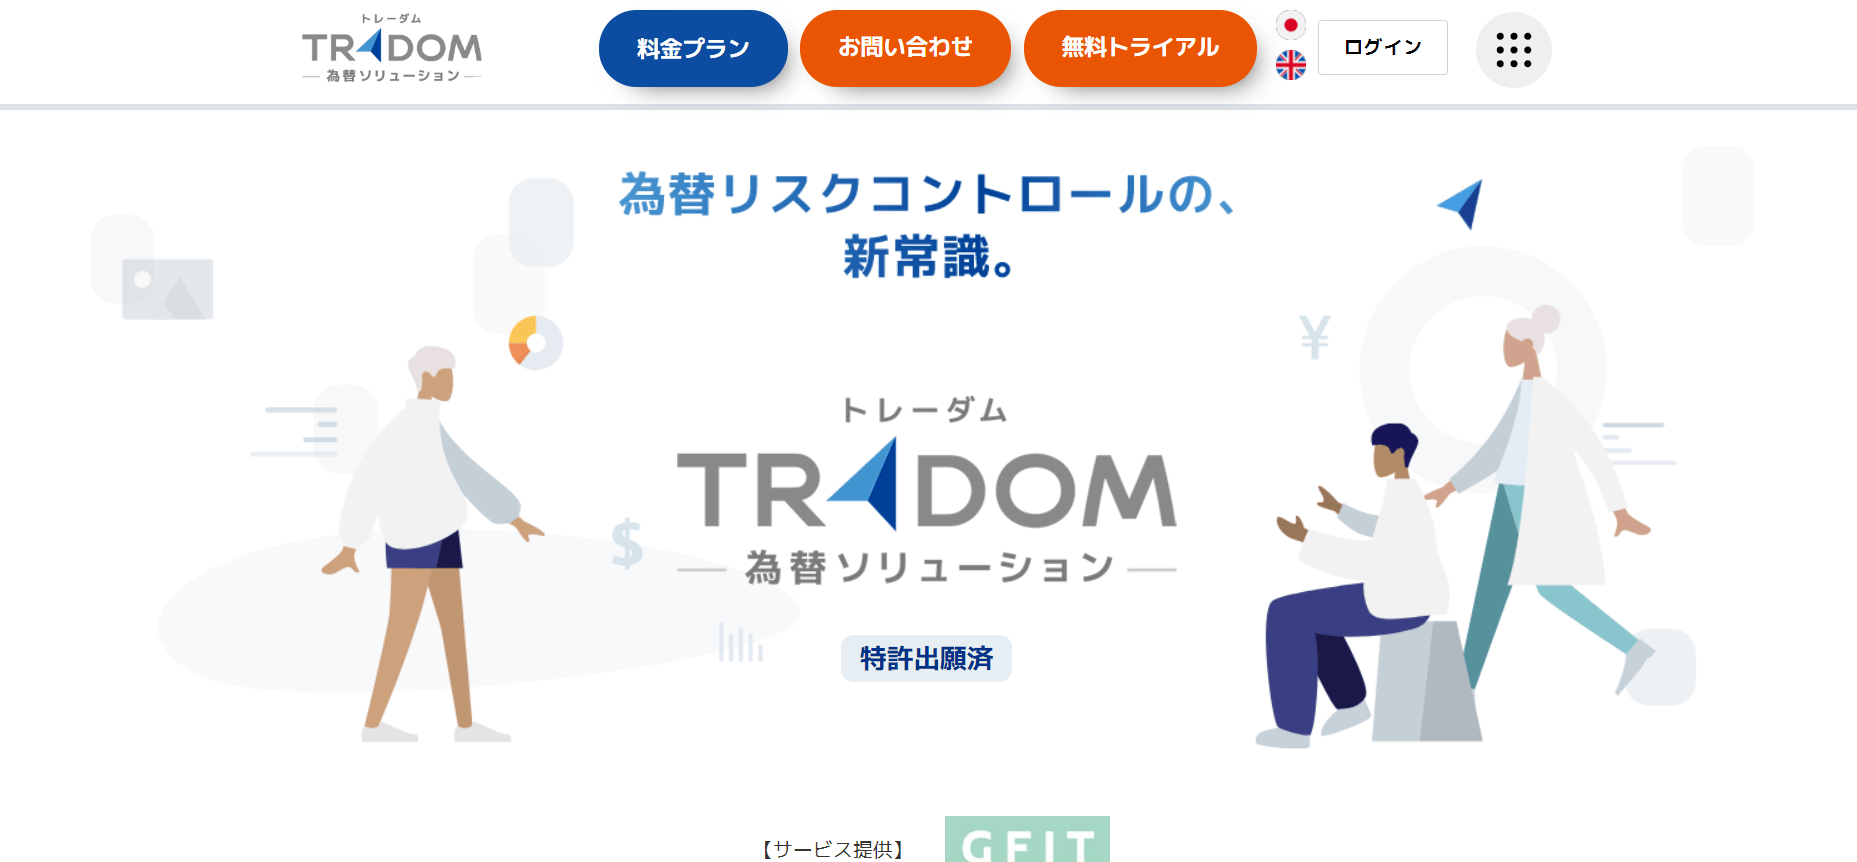 ドル円予想サービス(2)TRADOM為替ソリューション